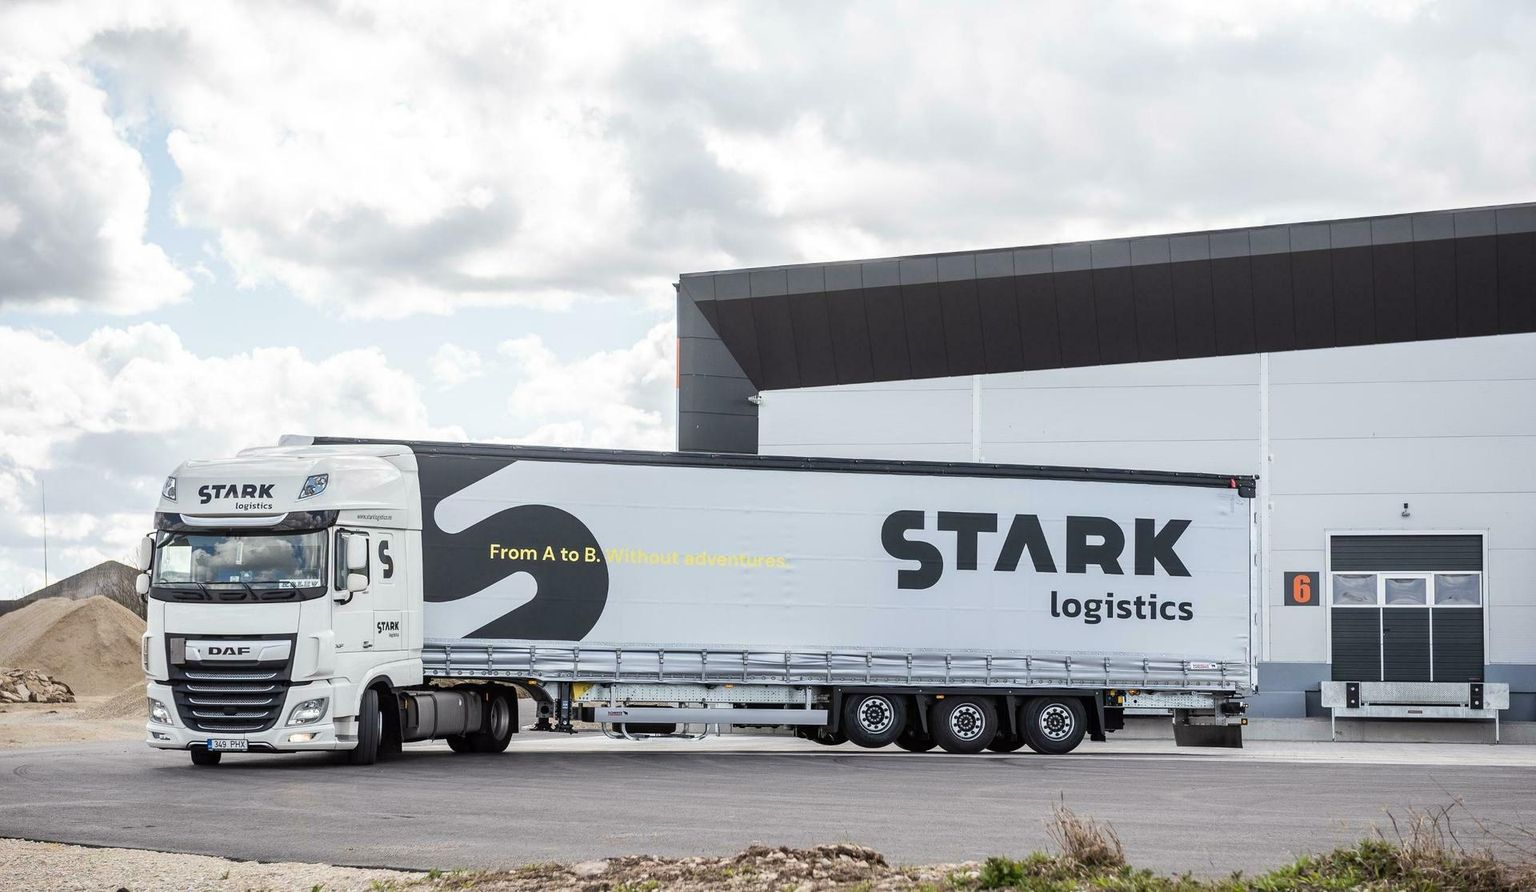 Truck of Stark Logistics.